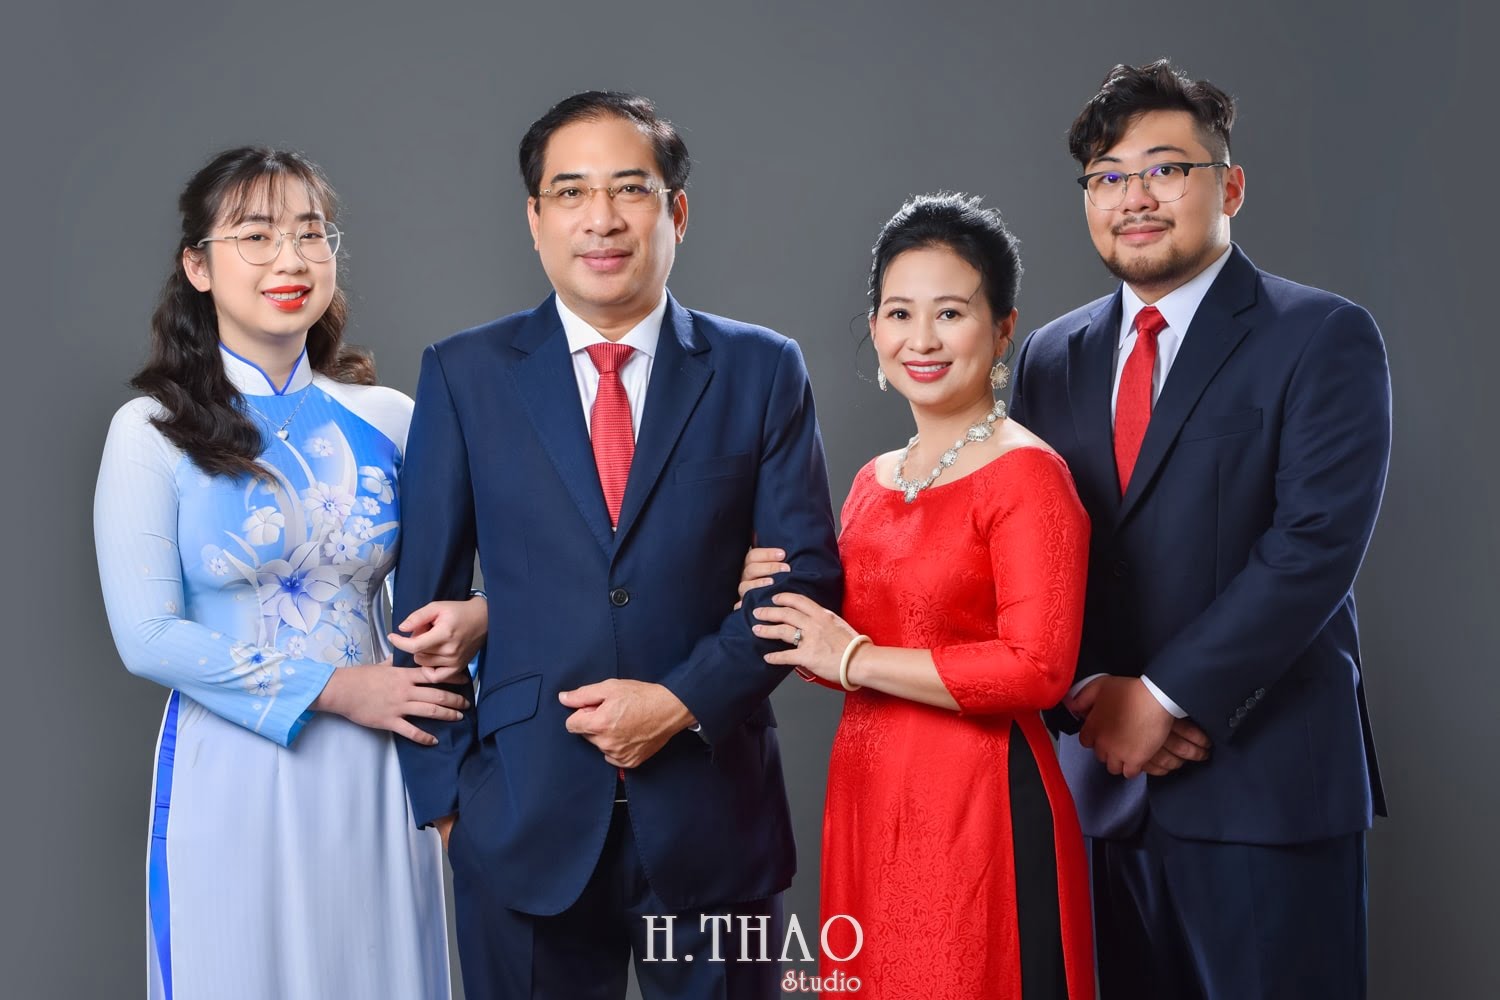 Anh gia dinh 4 nguoi 1 min - Dịch vụ chụp ảnh kỷ niệm ngày cưới - HThao Studio